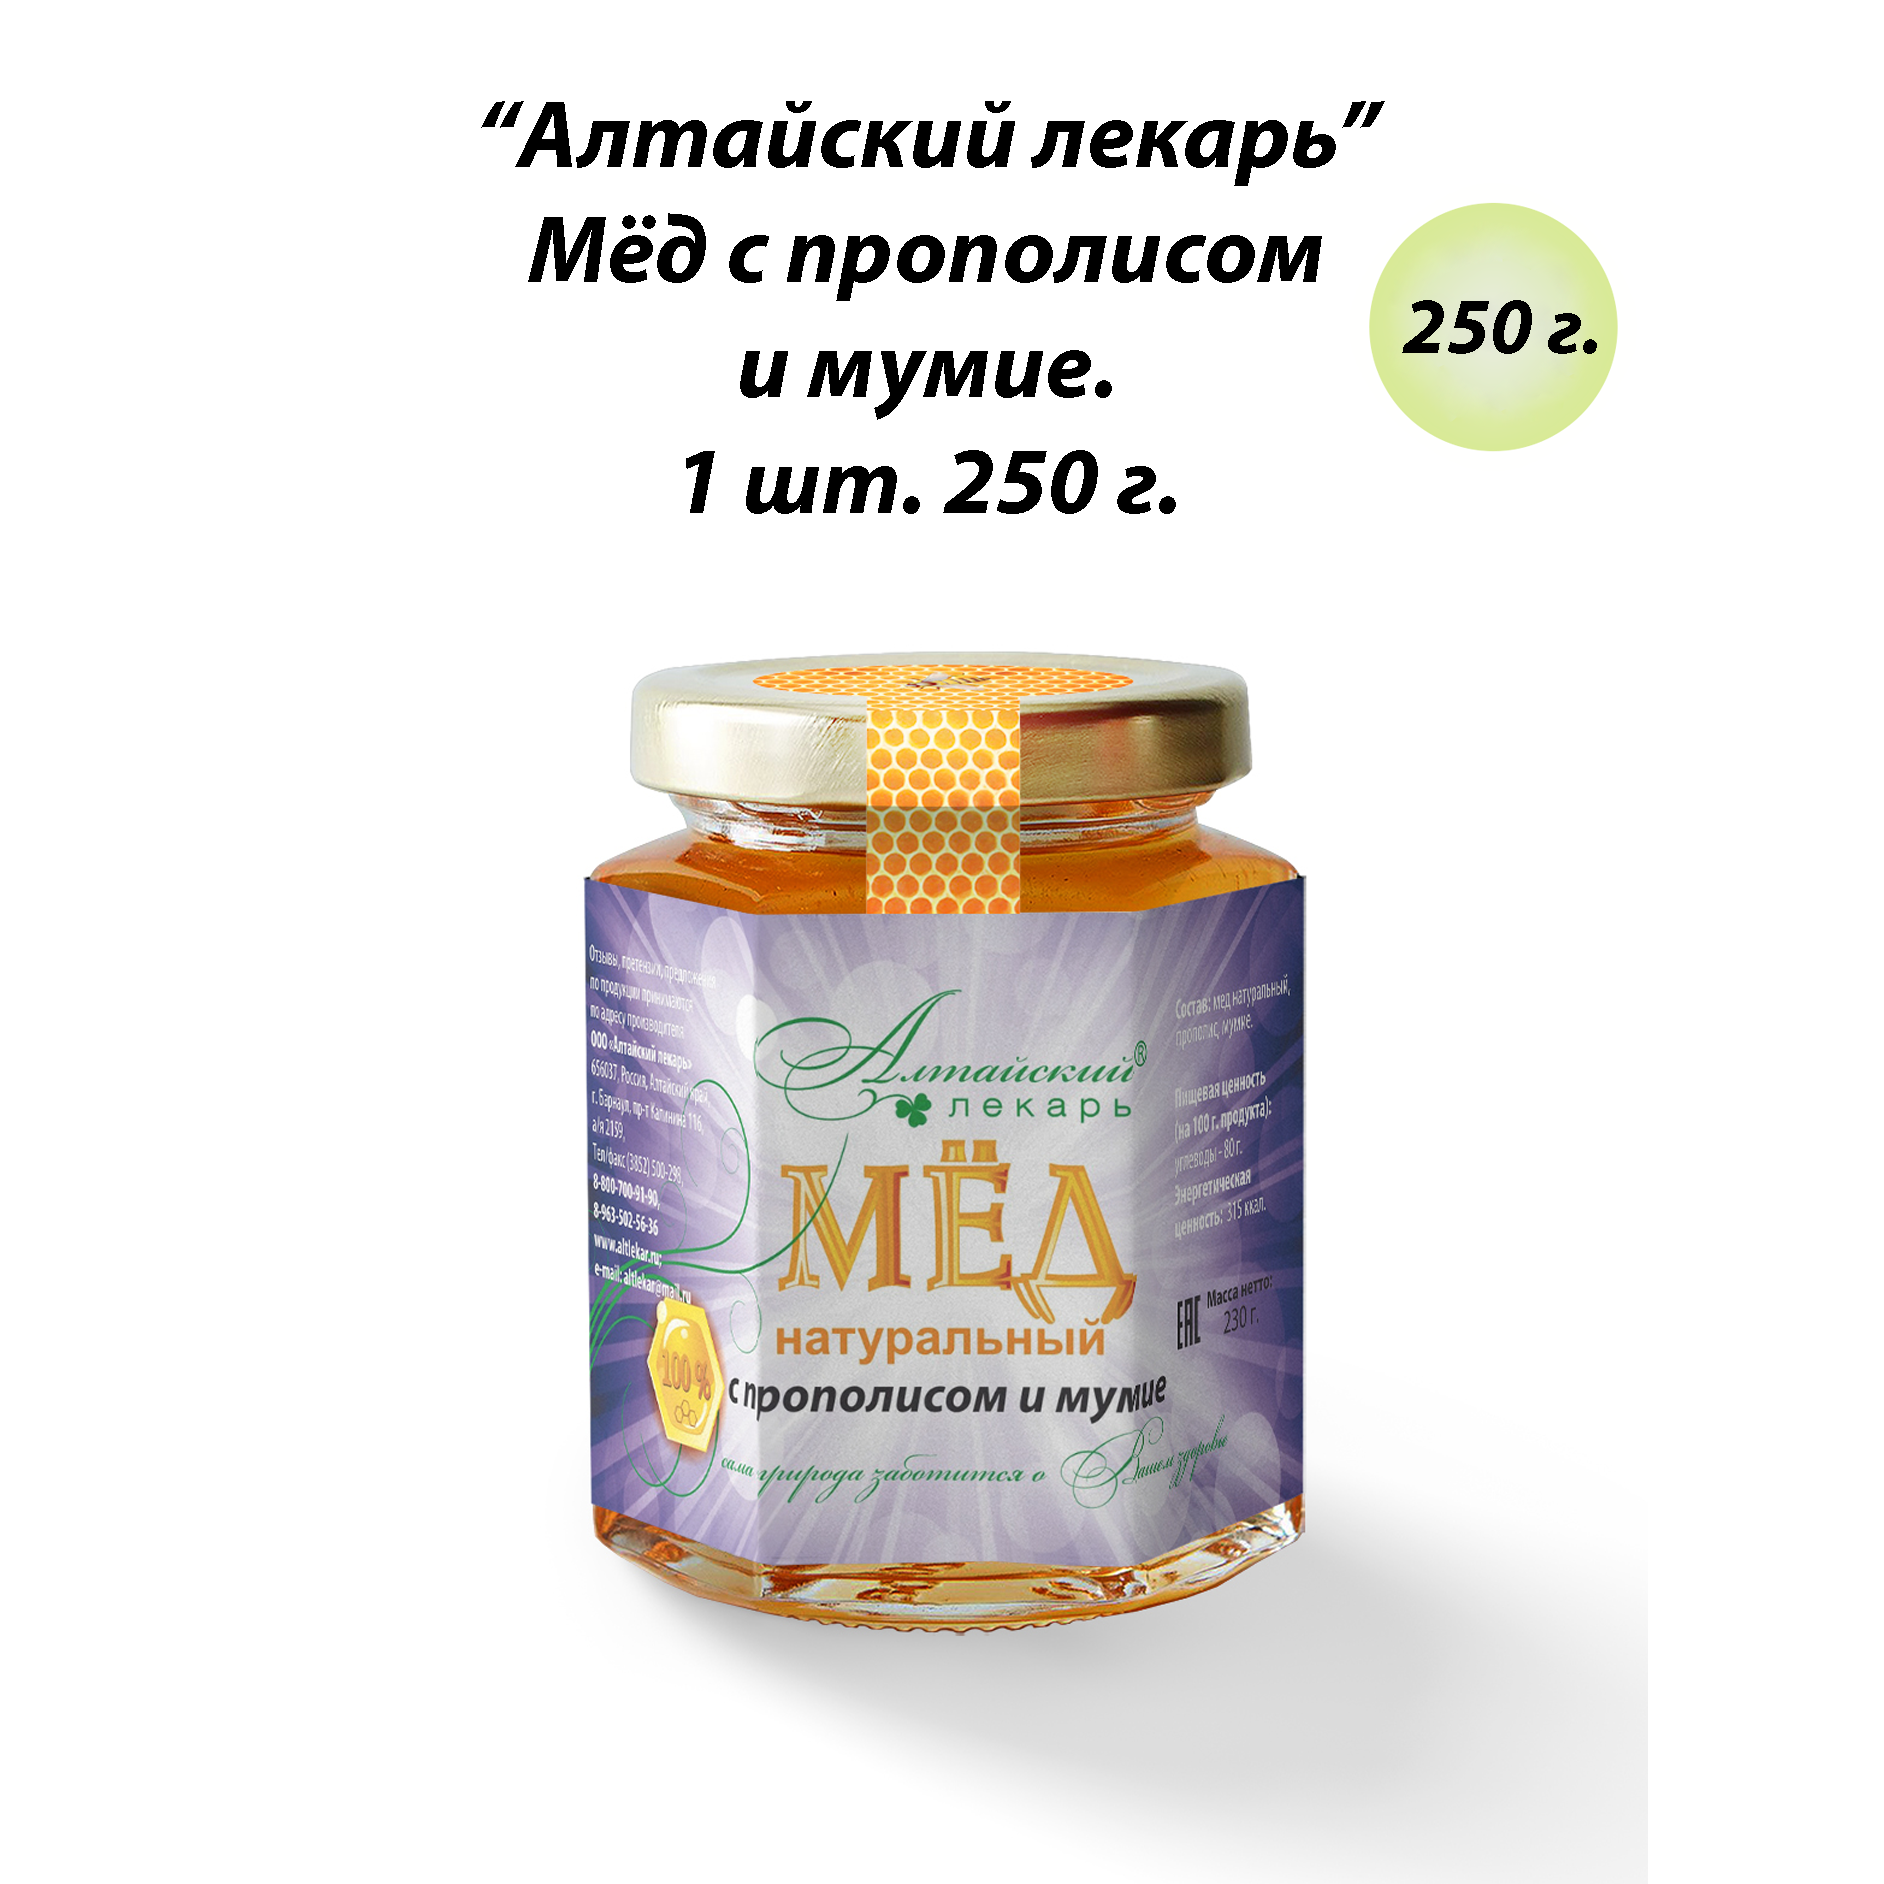 Мед Алтайский лекарь натуральный с прополисом и мумиё, 250 г.